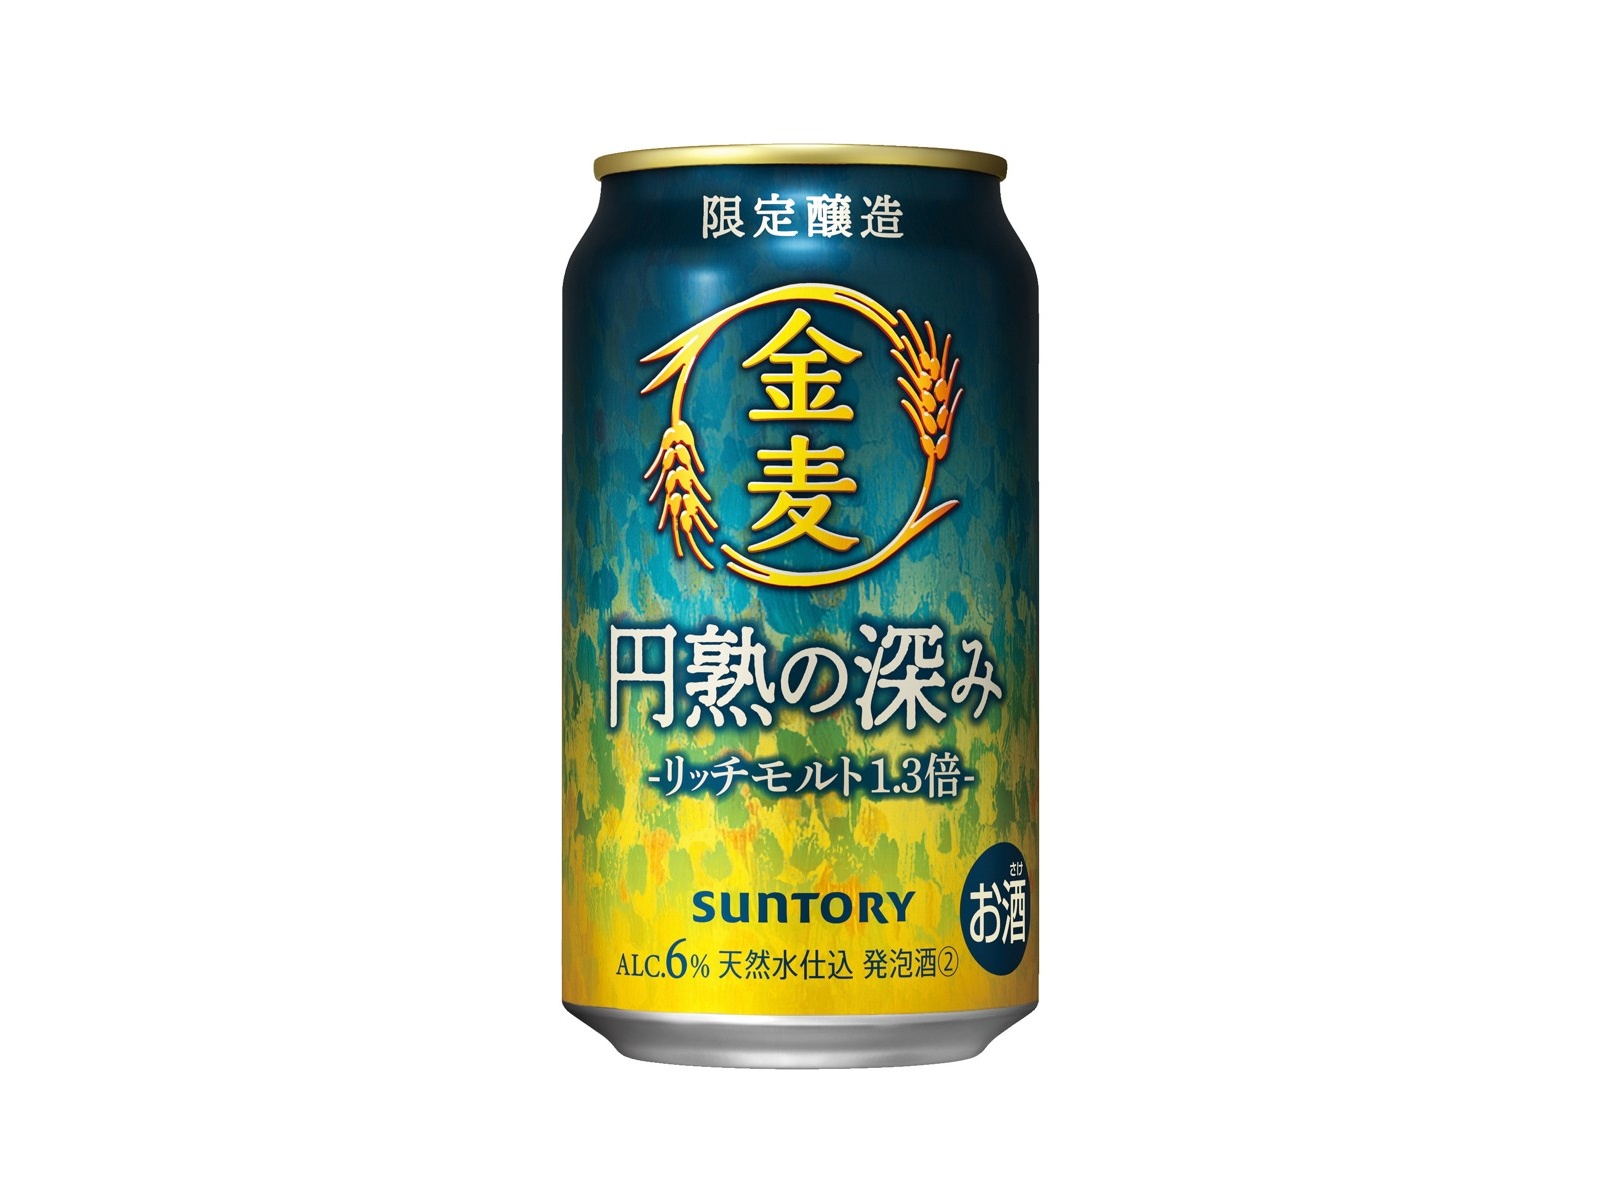 愛用 【限定】 サントリー 金麦 冬の味 通常缶 42本 SUNTORY ビール